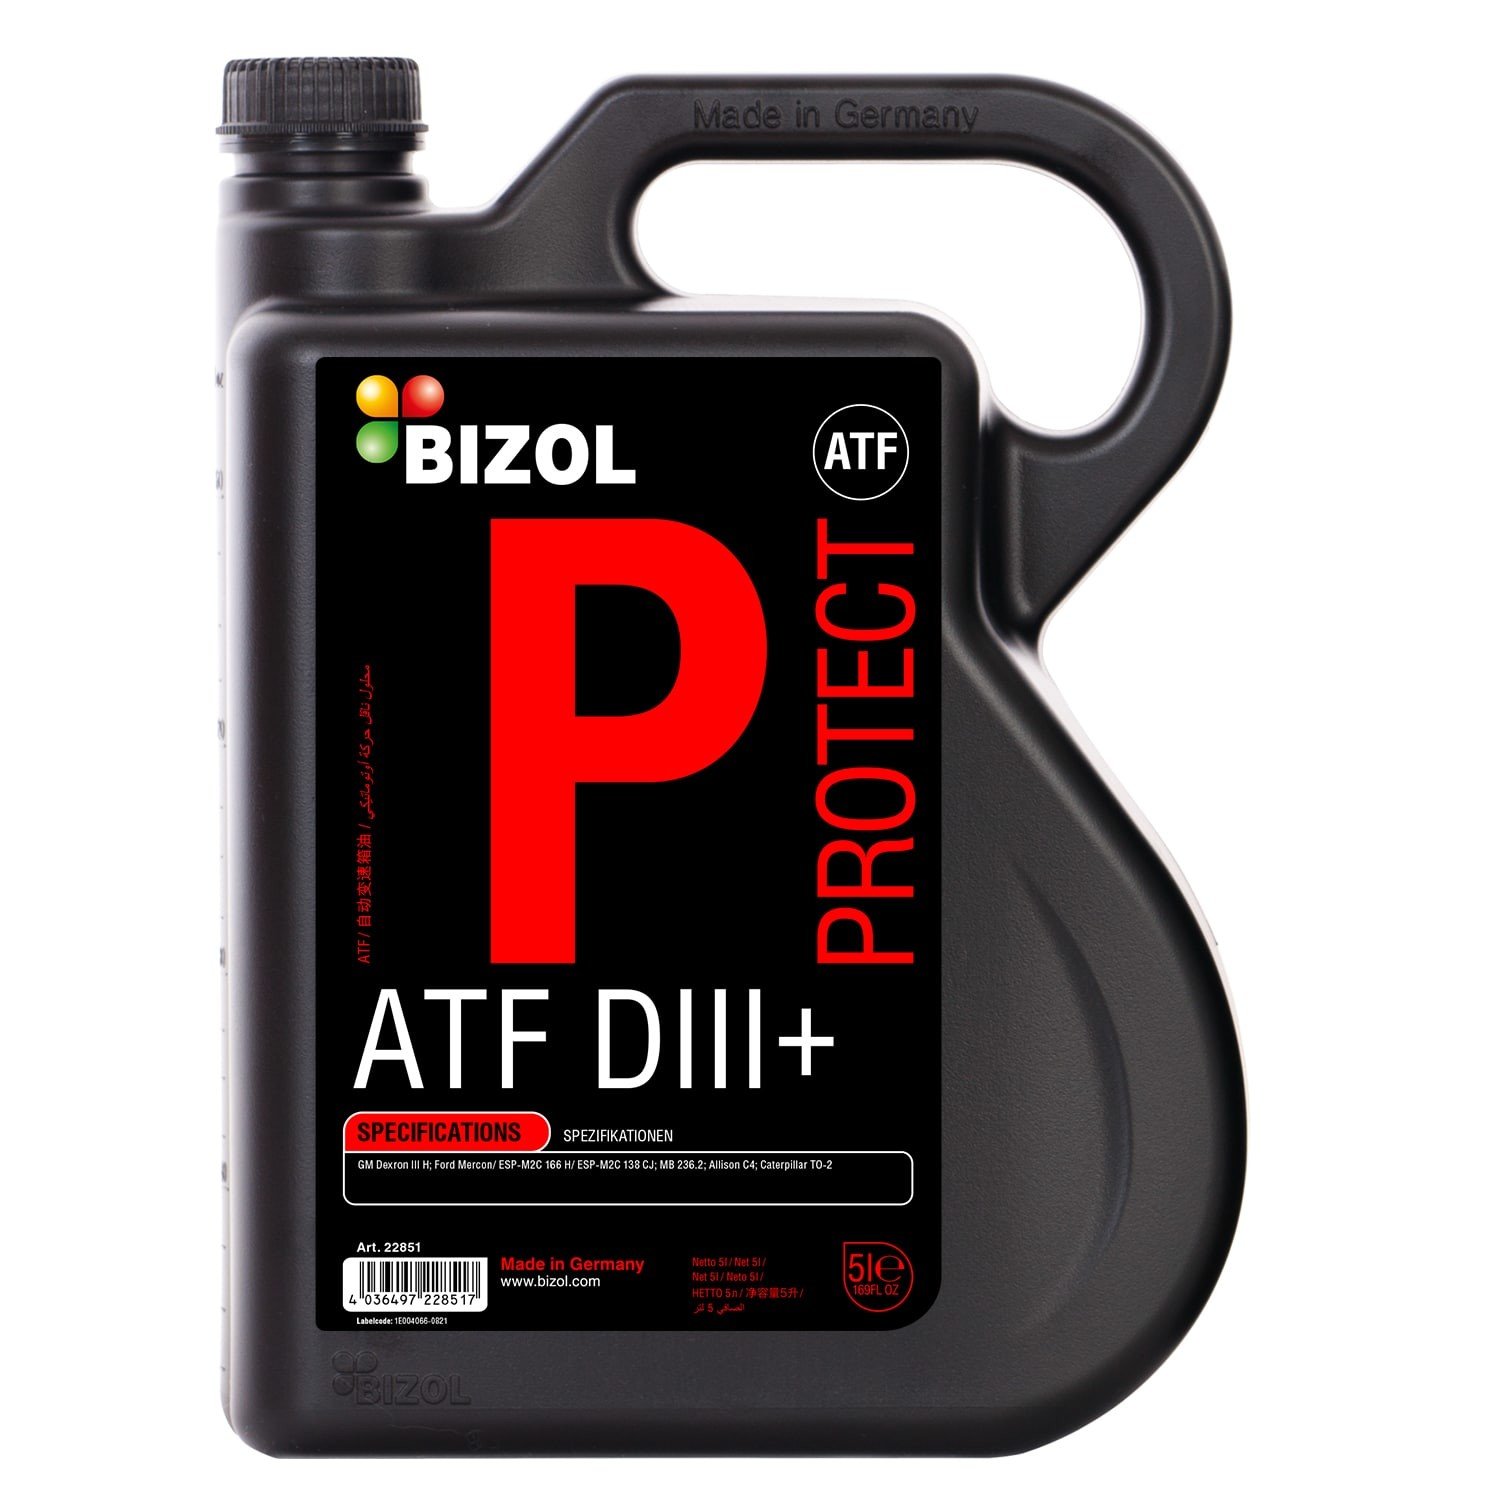 Bizol Protect ATF D-III+ Dexron 5L